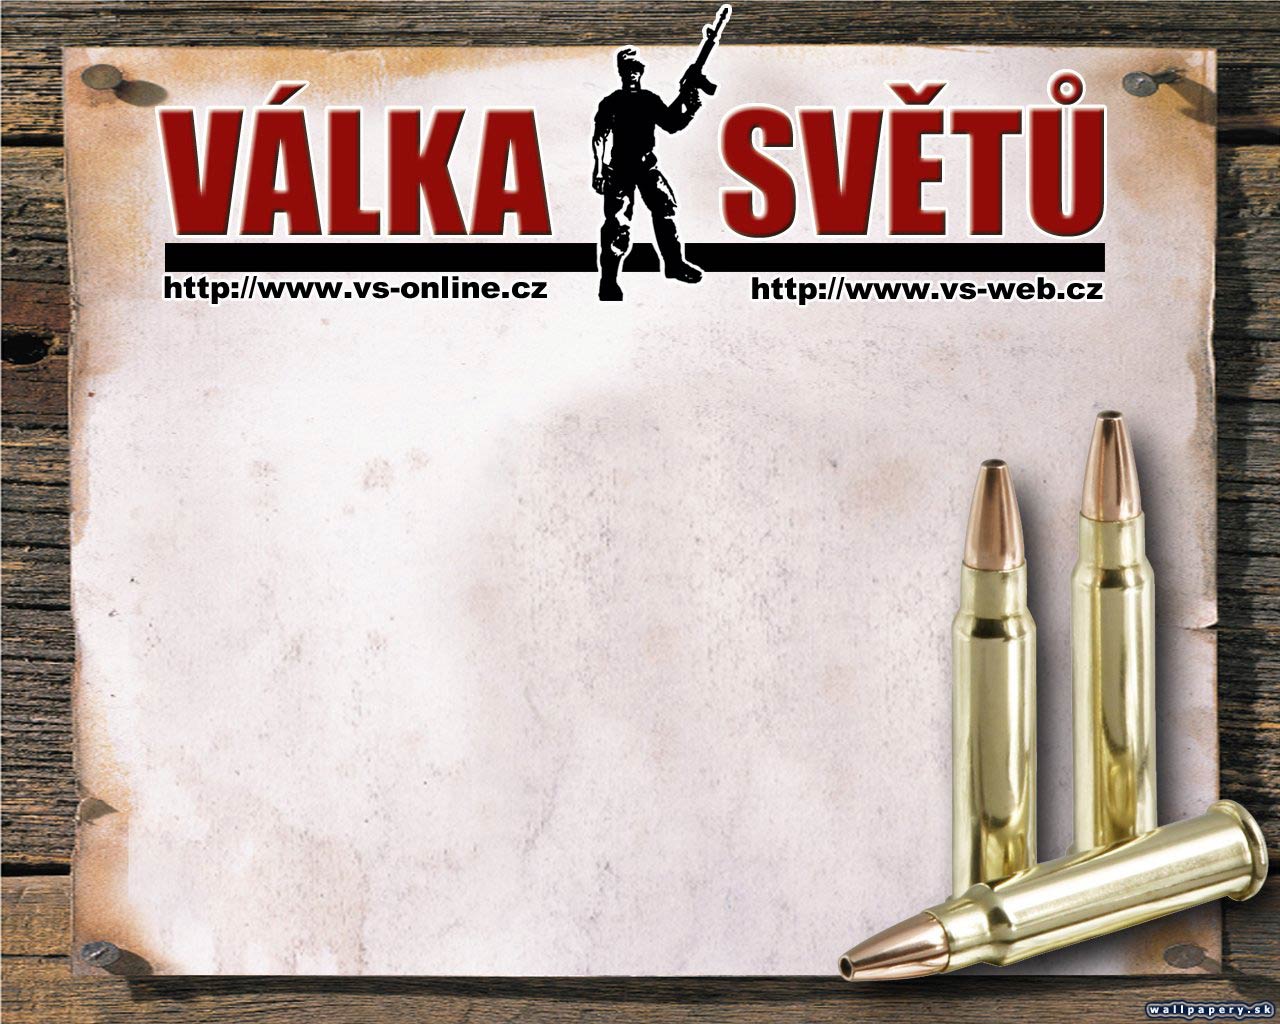 Vlka svt - wallpaper 4